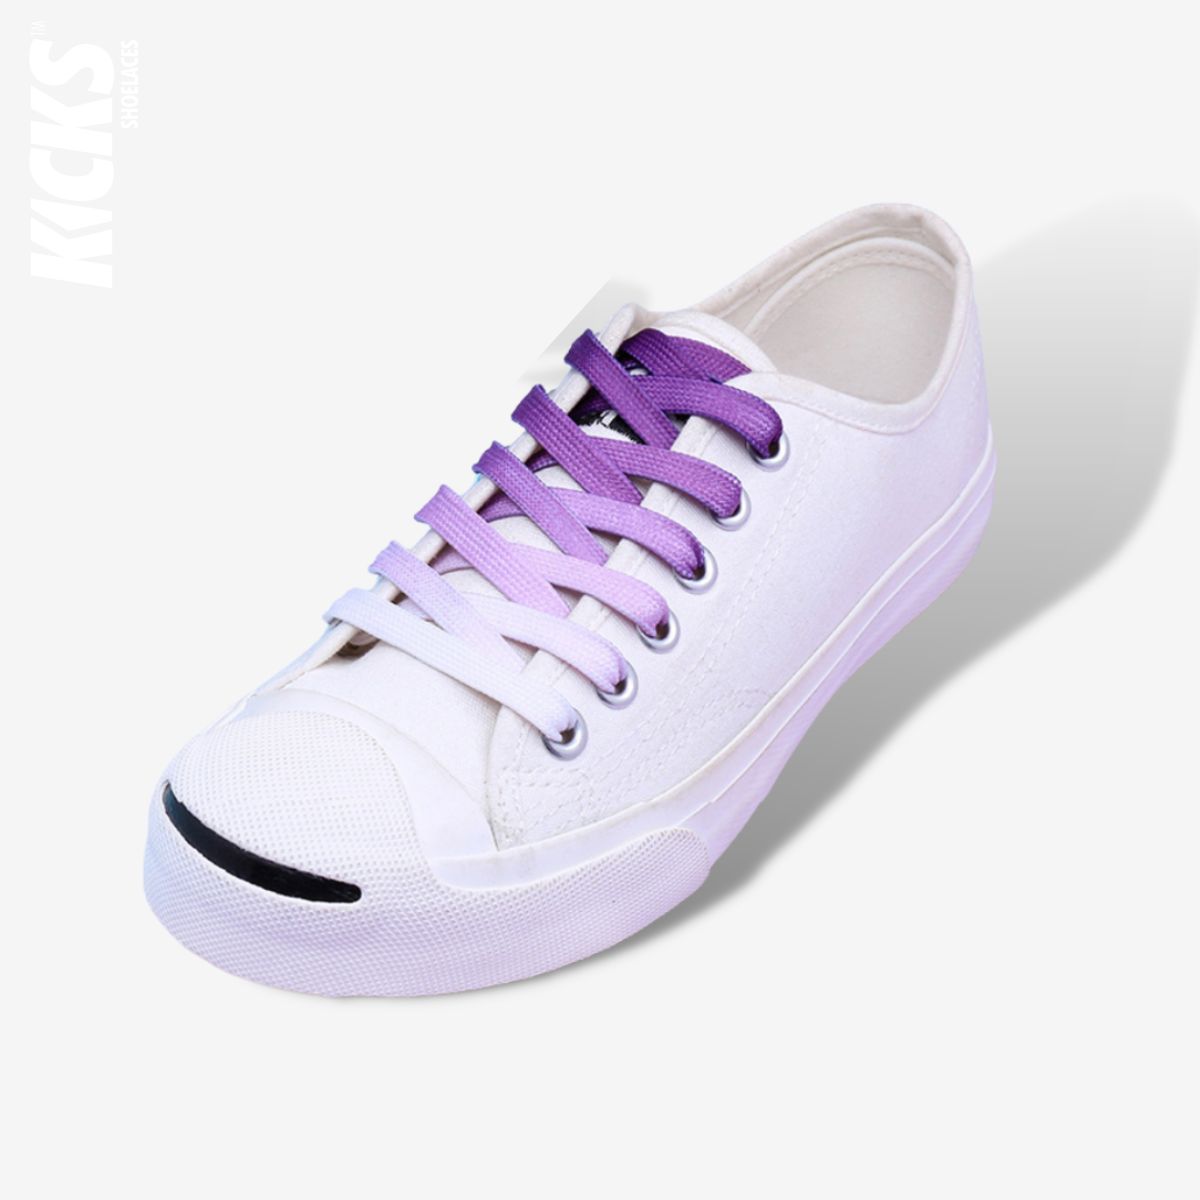 Gradient Color Shoelaces - Kicks Shoelaces